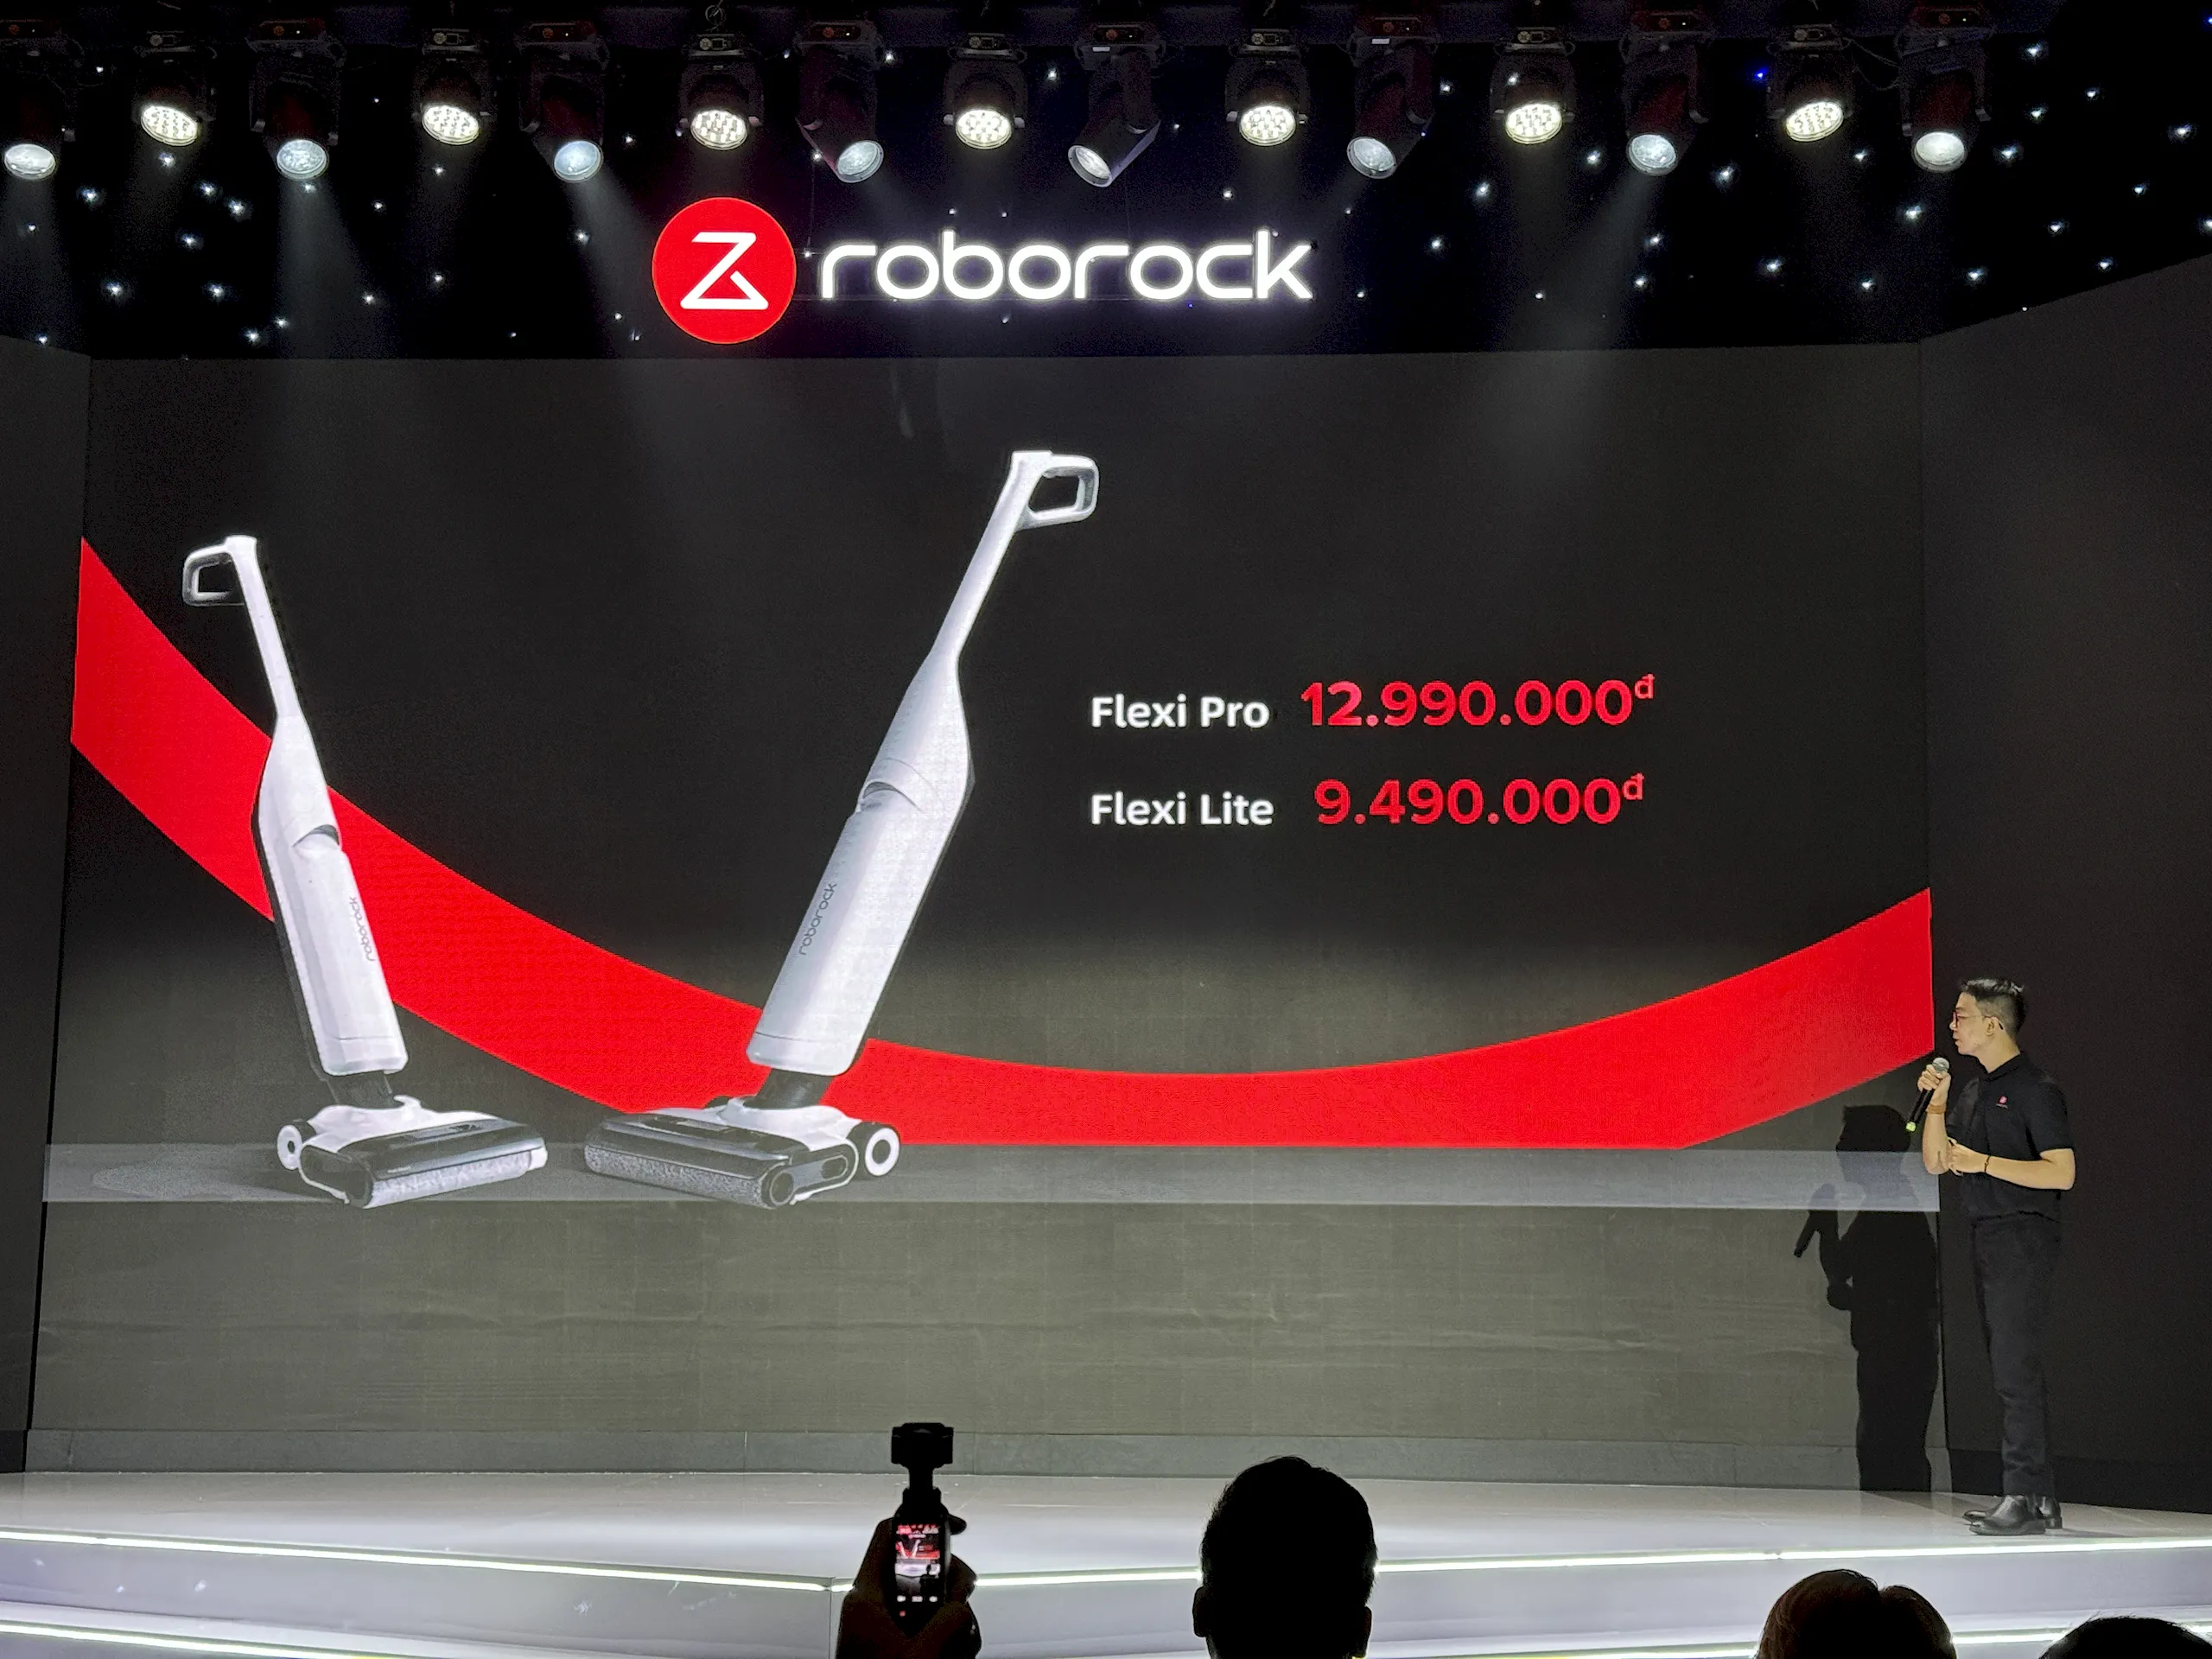 Roborock ra mắt 5 sản phẩm Robot hút bụi thông minh và Máy hút bụi cầm tay không dây giá từ 9,490,000 VND